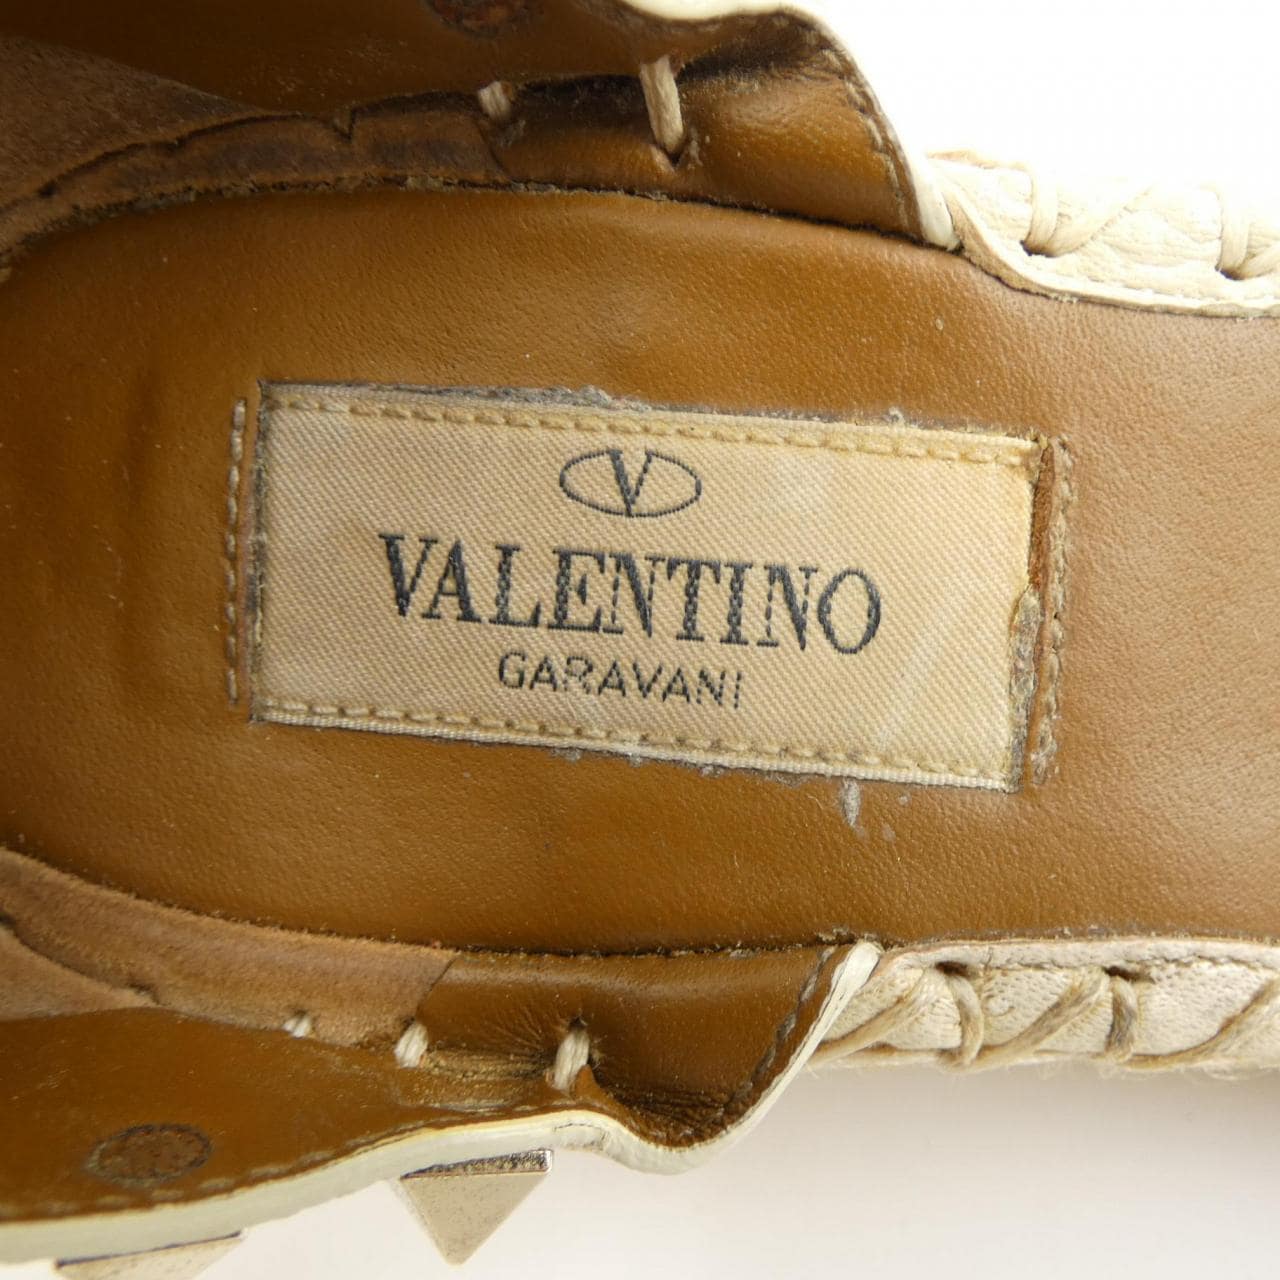 VALENTINO GARAVANI VALENTINO GARAVANI sandals